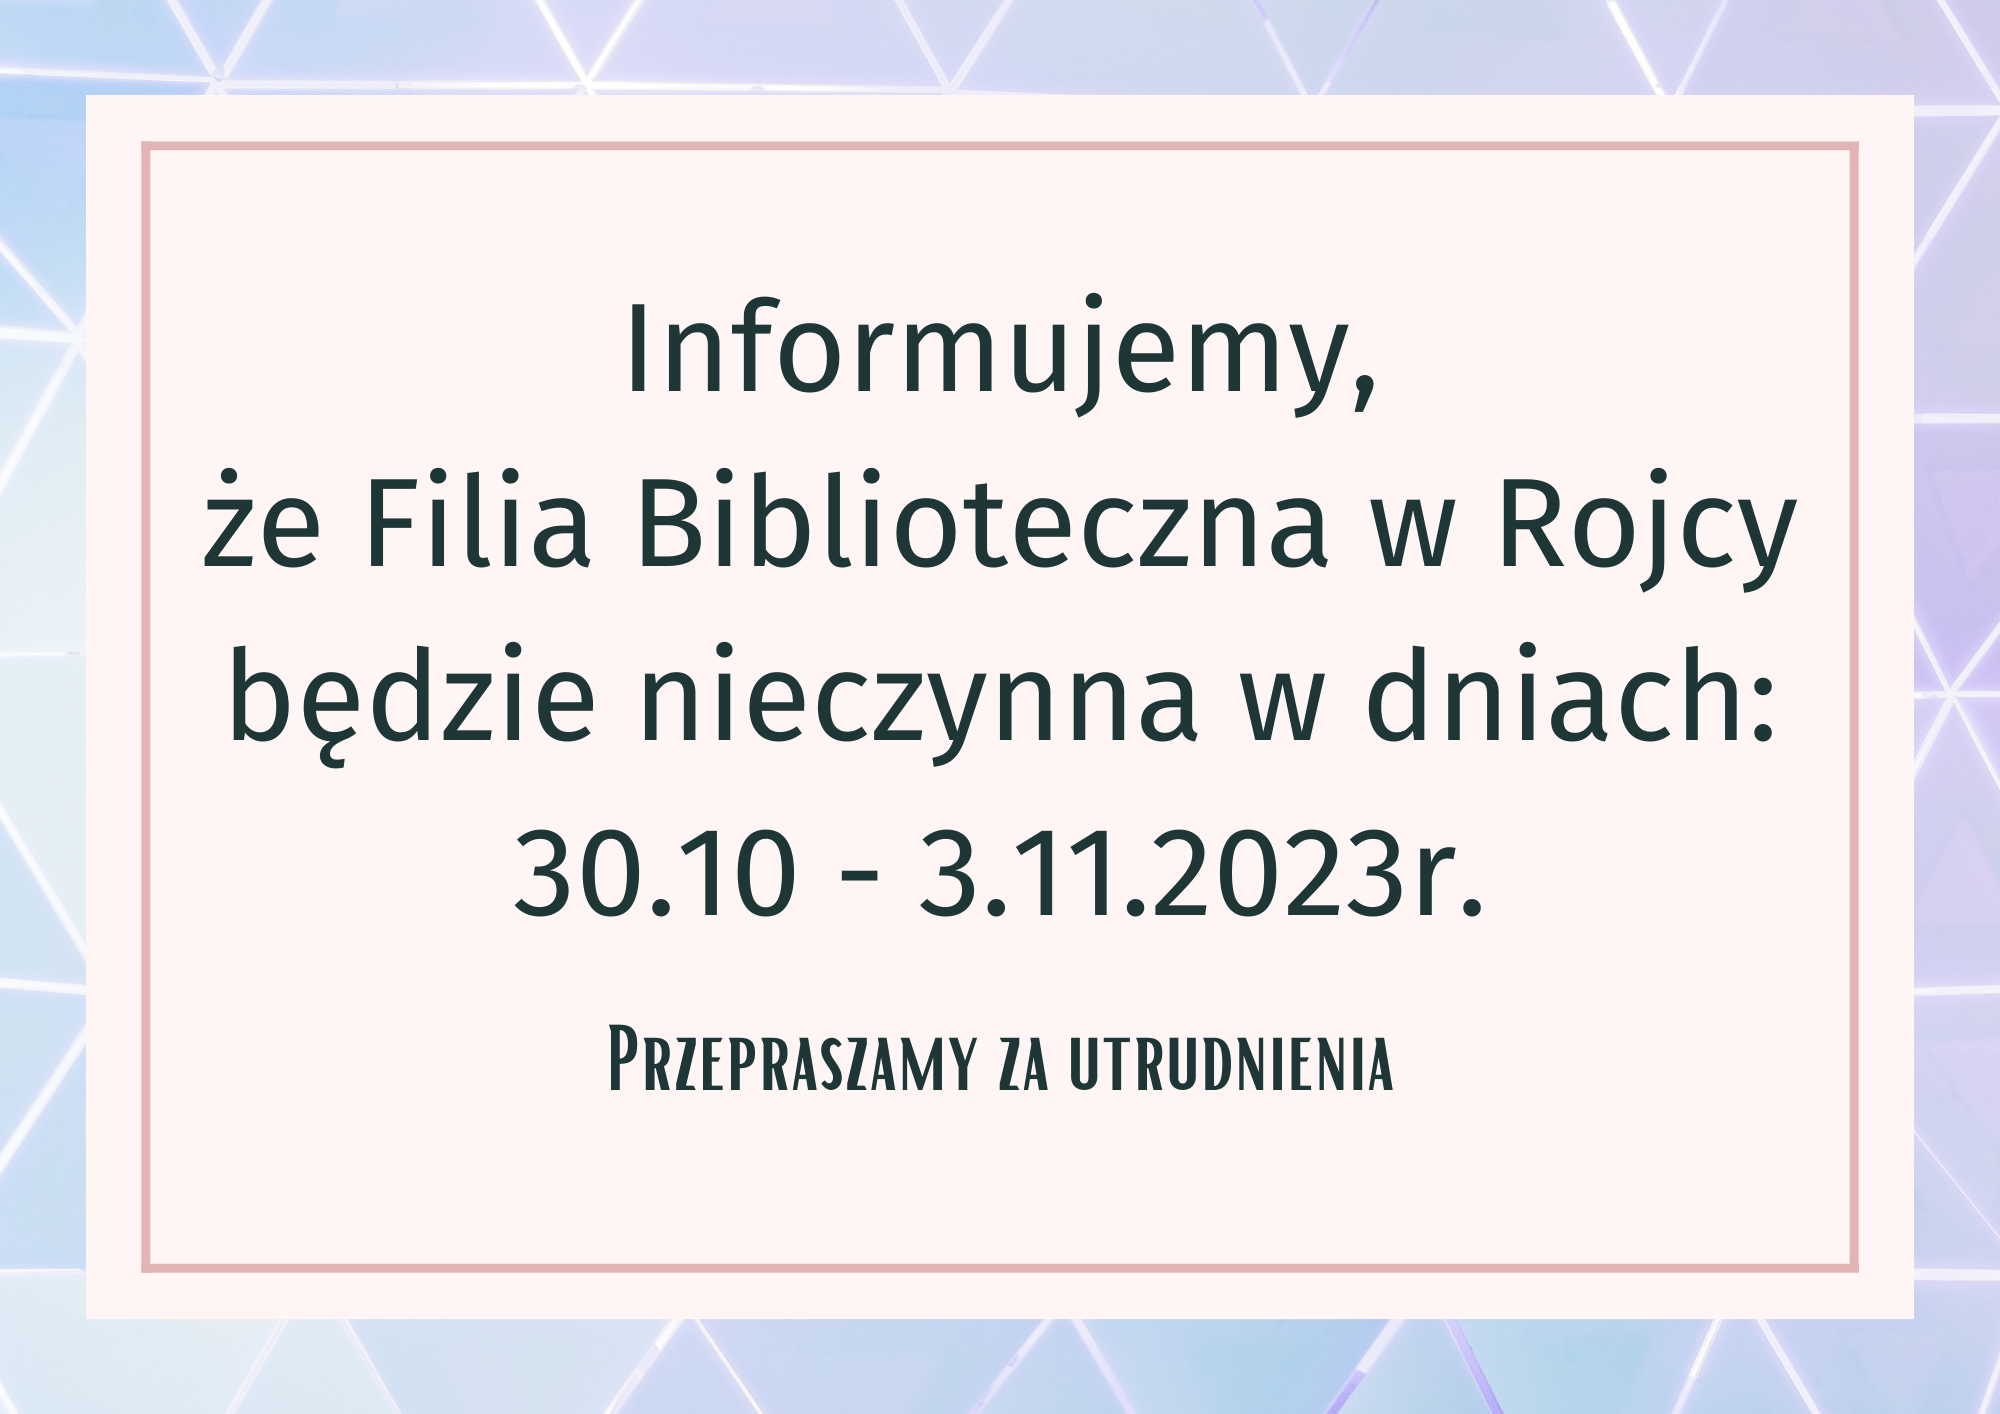 Filia Biblioteczna nieczynna w dniach 30.10-3.11.